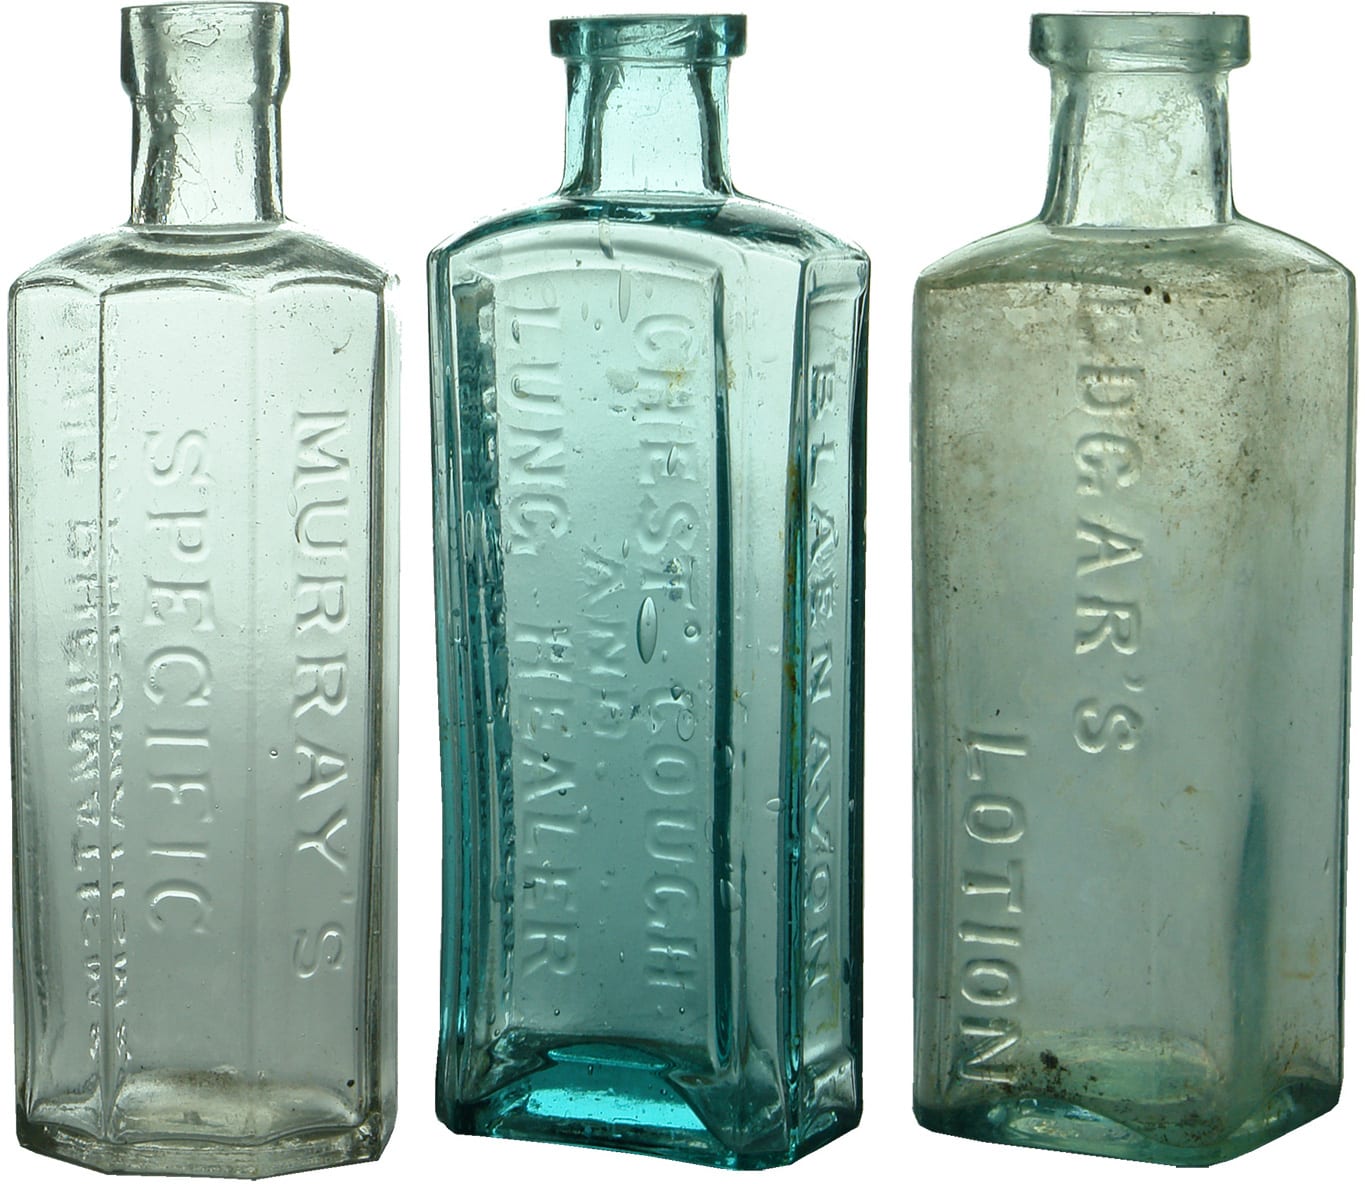 Antique Cure Medicine Bottles